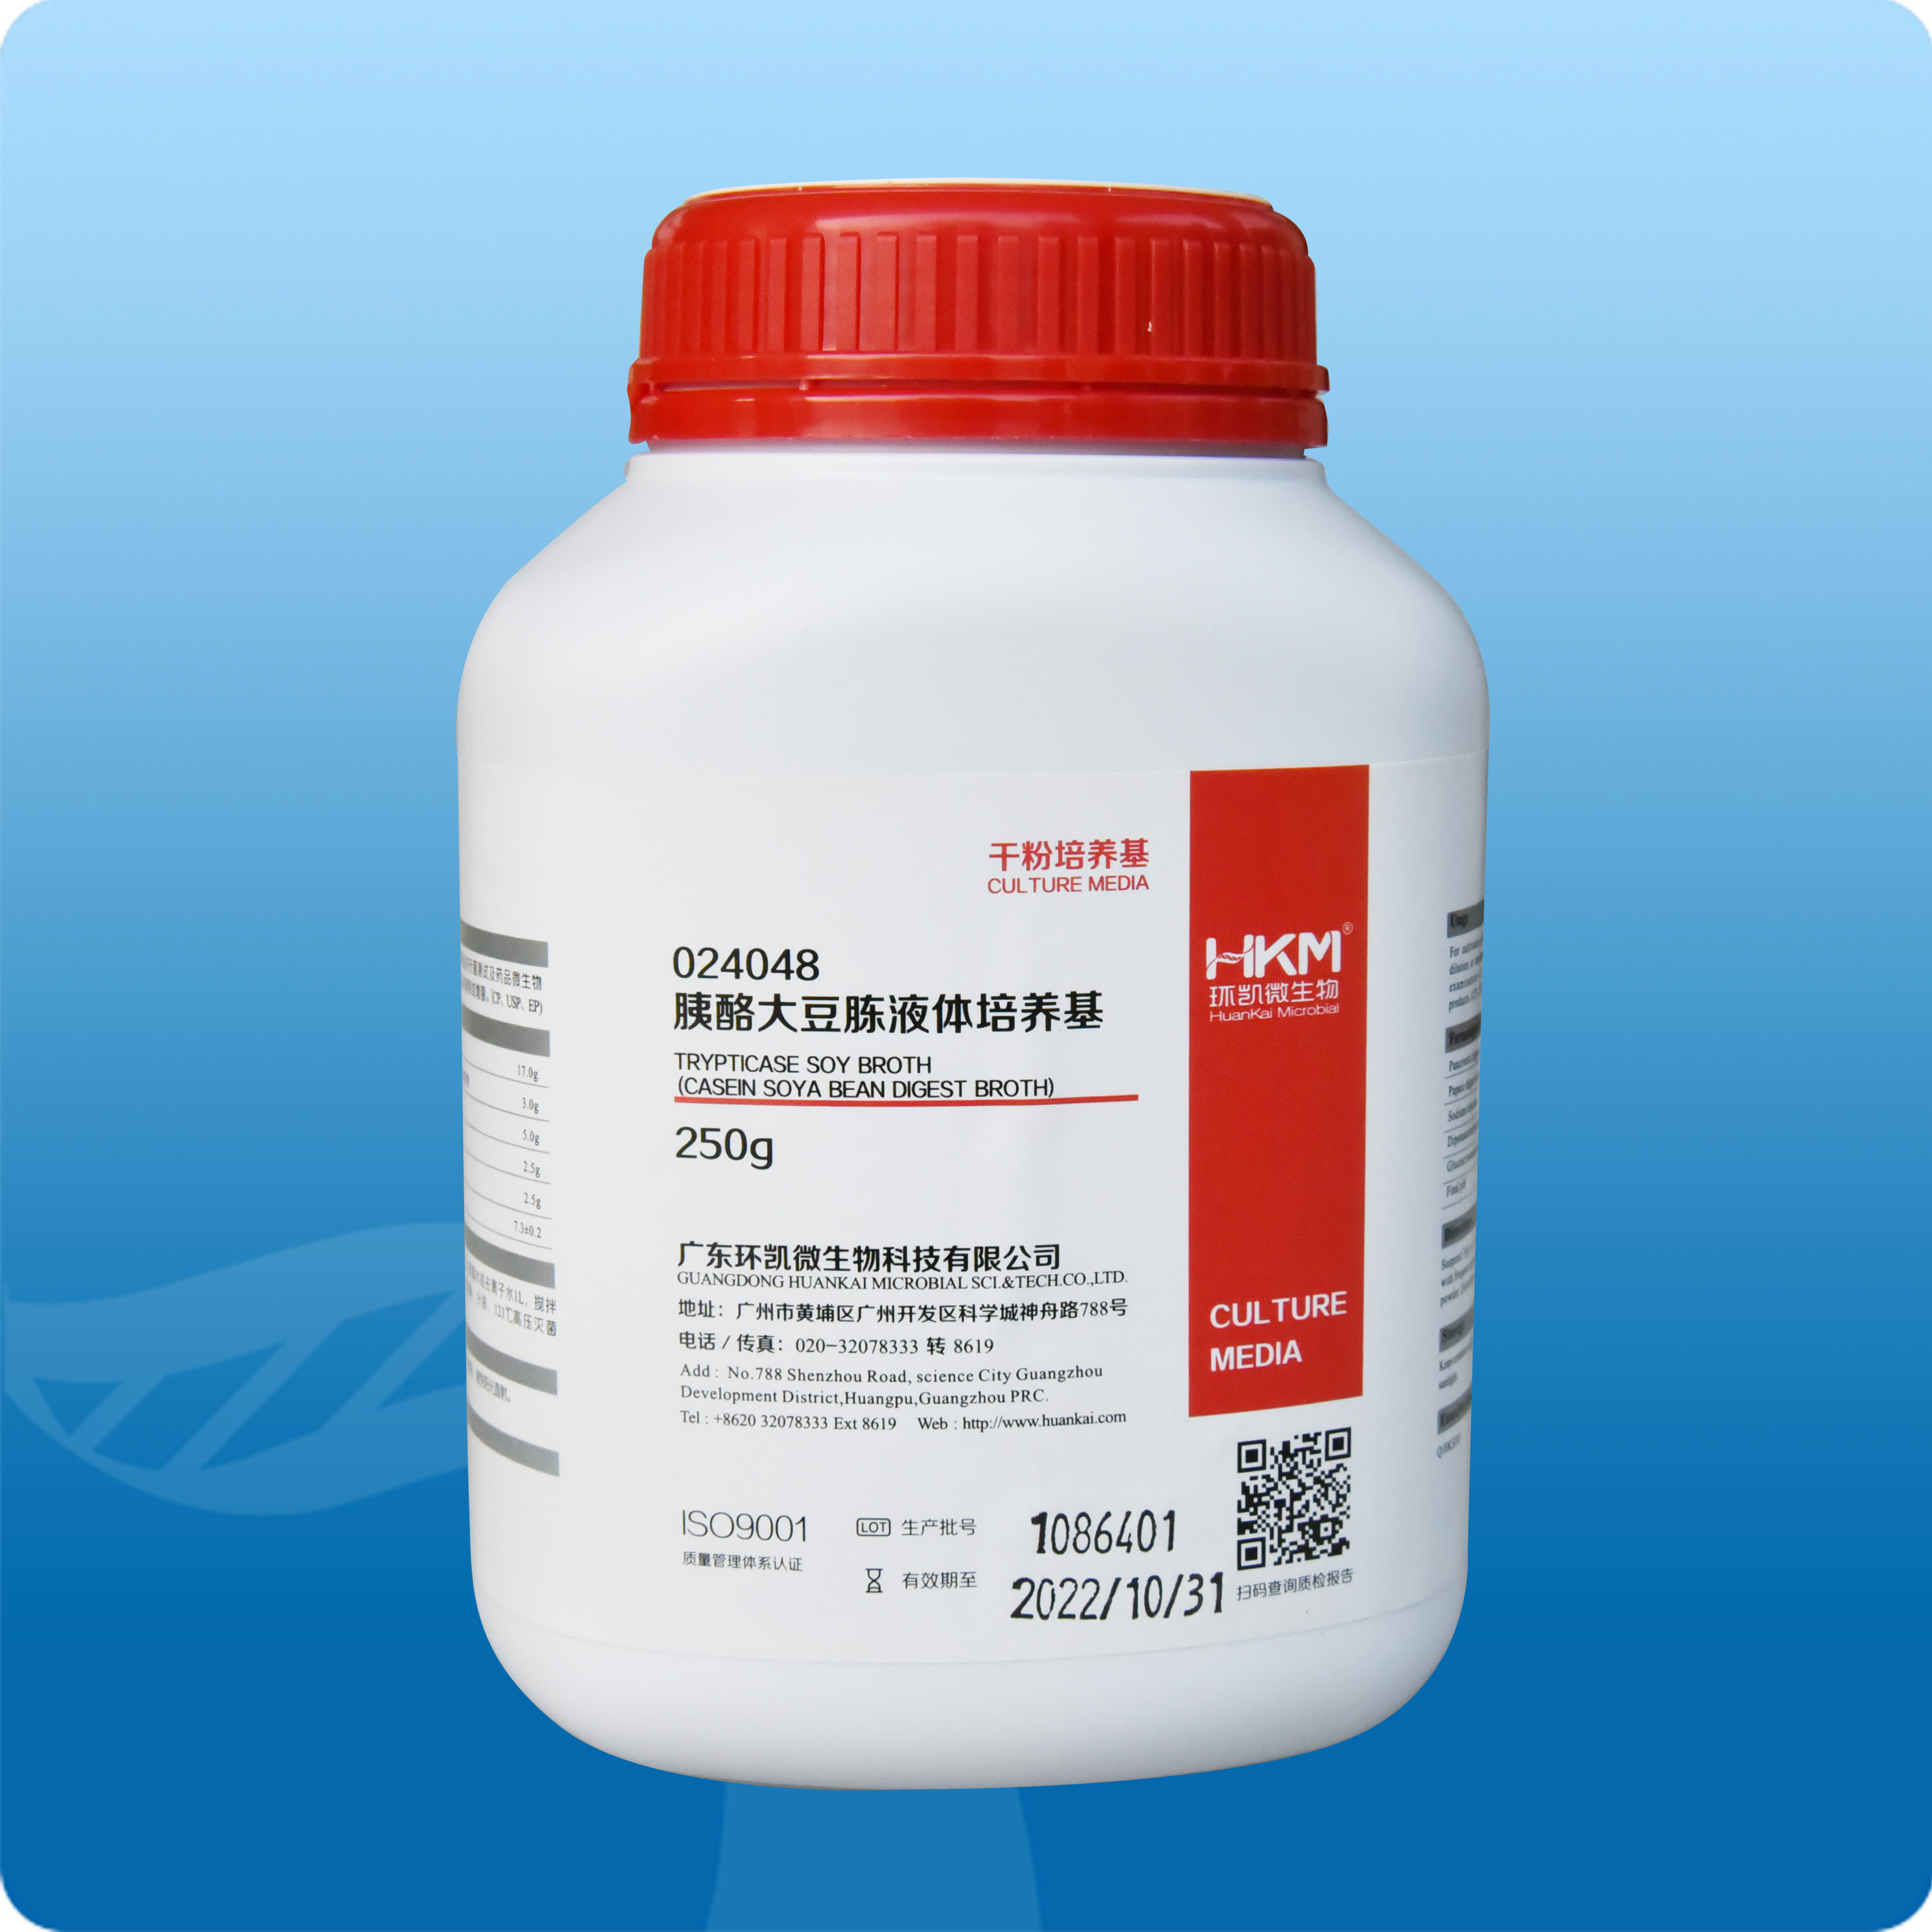 024048 胰酪大豆胨液体培养基(TSB)(中国药典) 干粉 250g